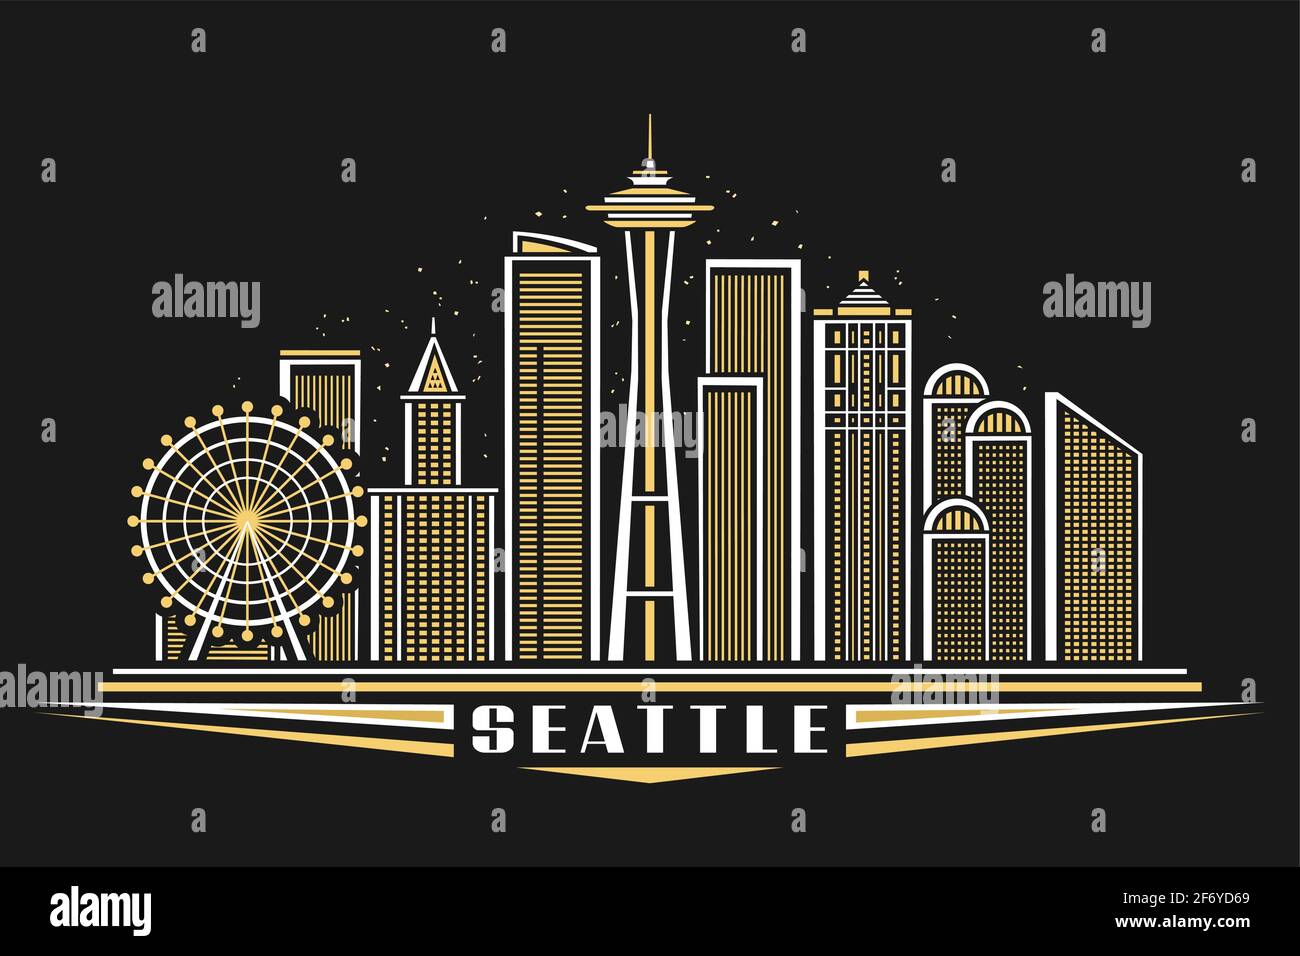 Vektor-Illustration von Seattle, horizontales Poster mit Umriss-Design beleuchtete seattle Stadtlandschaft, american Urban Line Art-Konzept mit dekorativen Stock Vektor